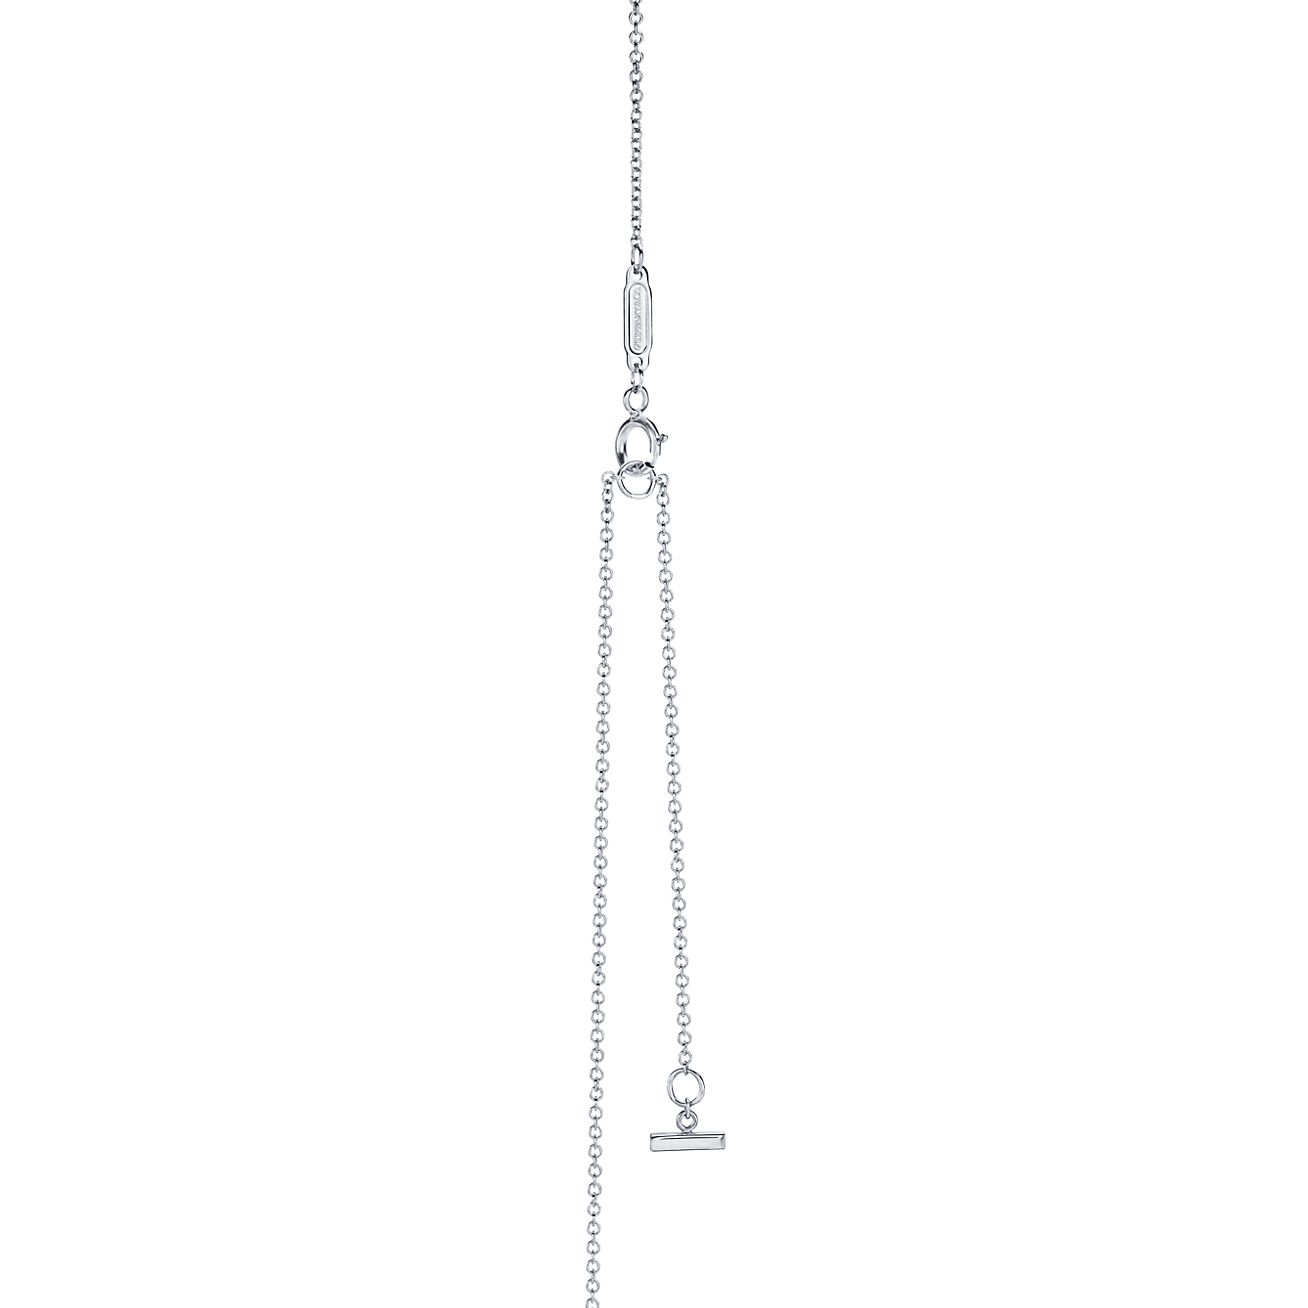 ティファニー T スマイル ペンダント ミニ ダイヤモンド 18k ホワイトゴールド Tiffany Co